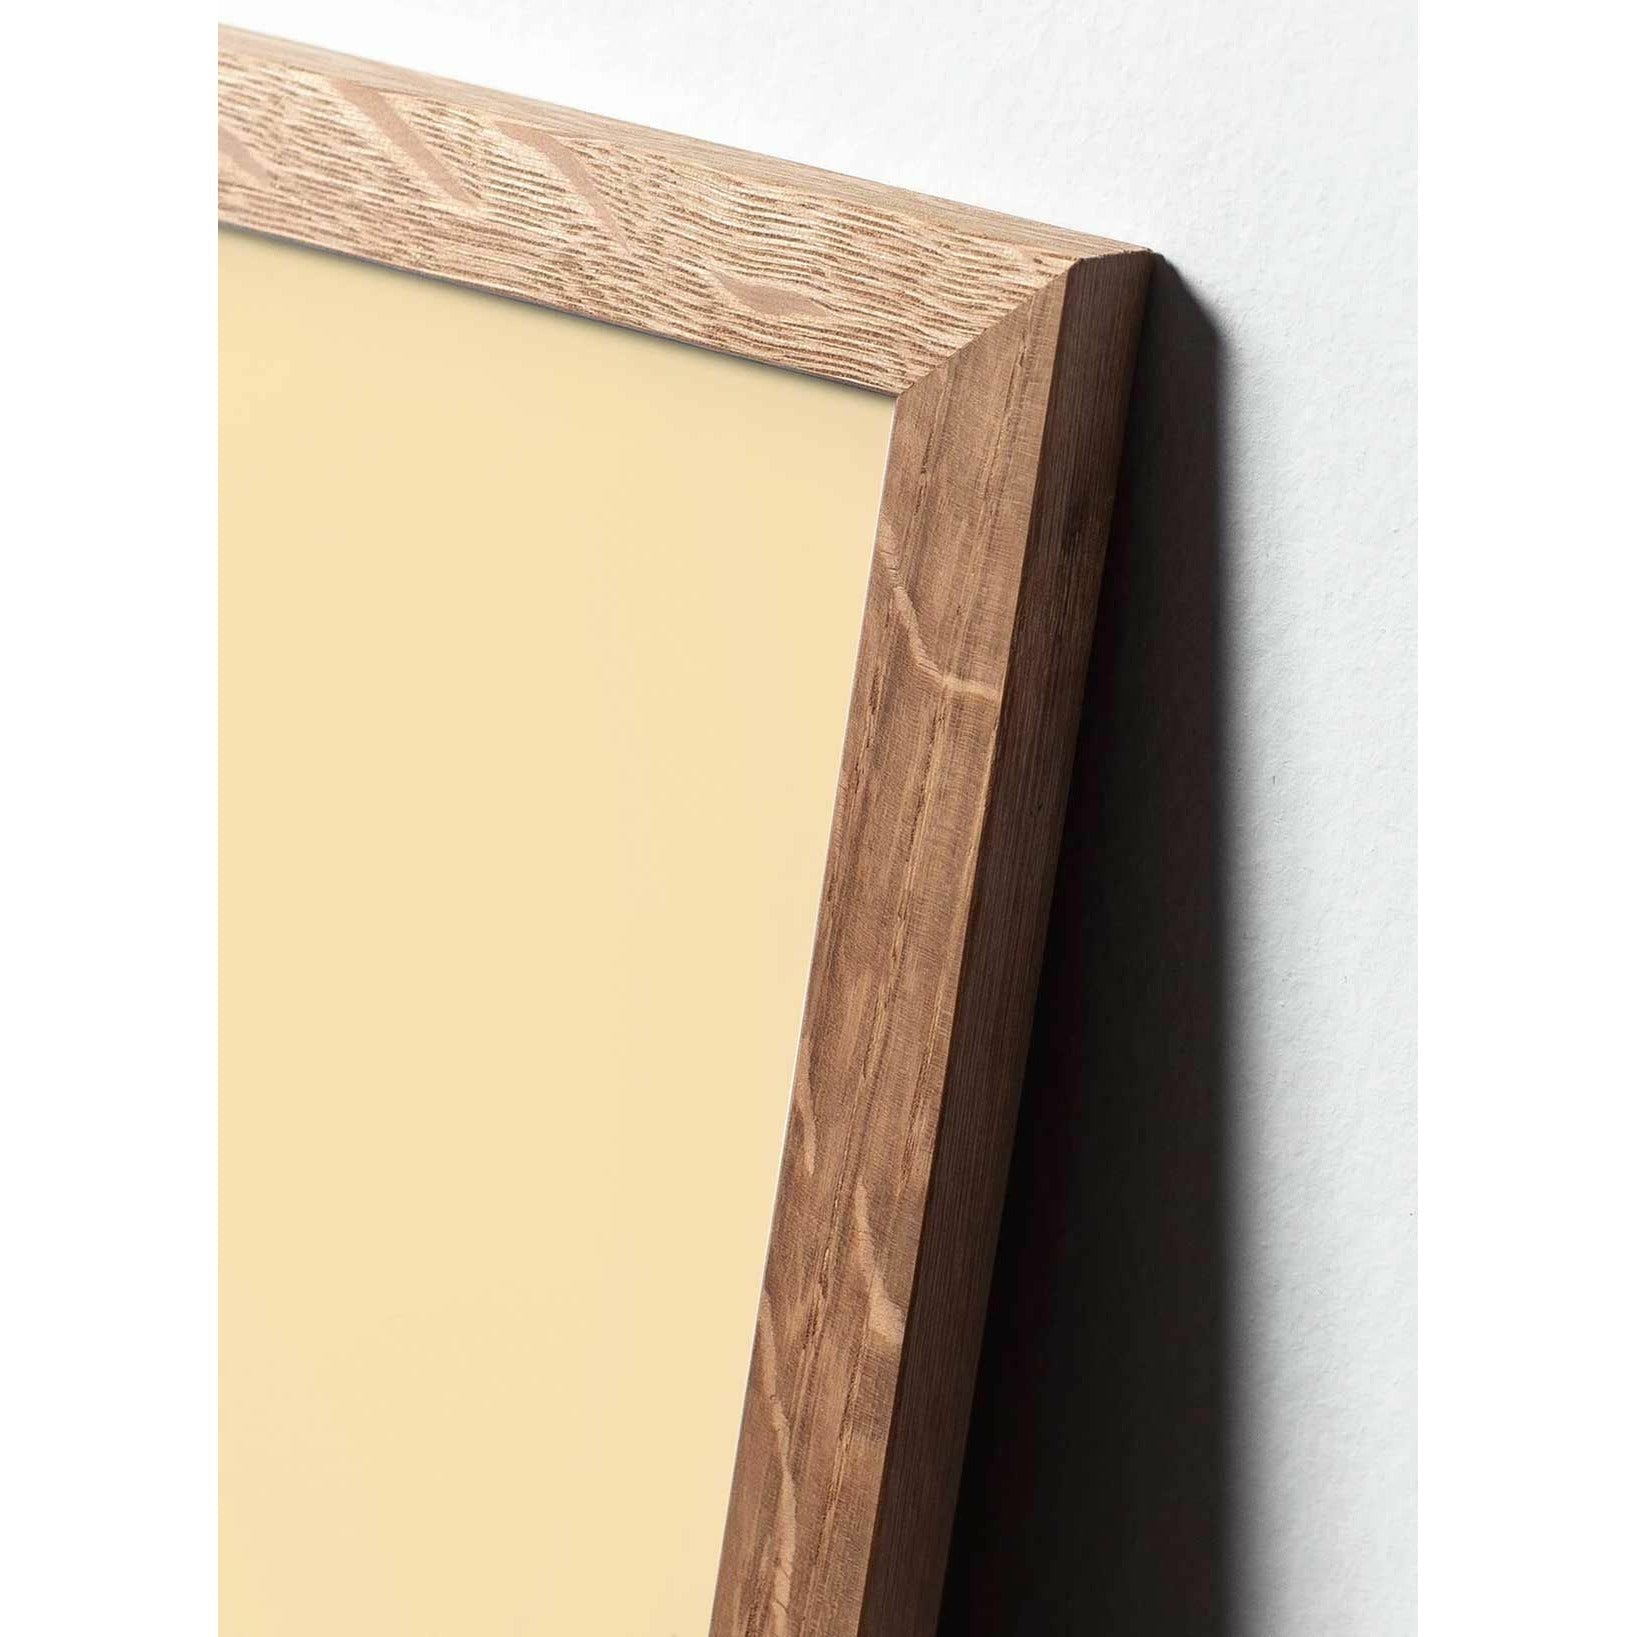 Póster clásico de cono de pino de creación, marco hecho de madera clara A5, fondo de color arena